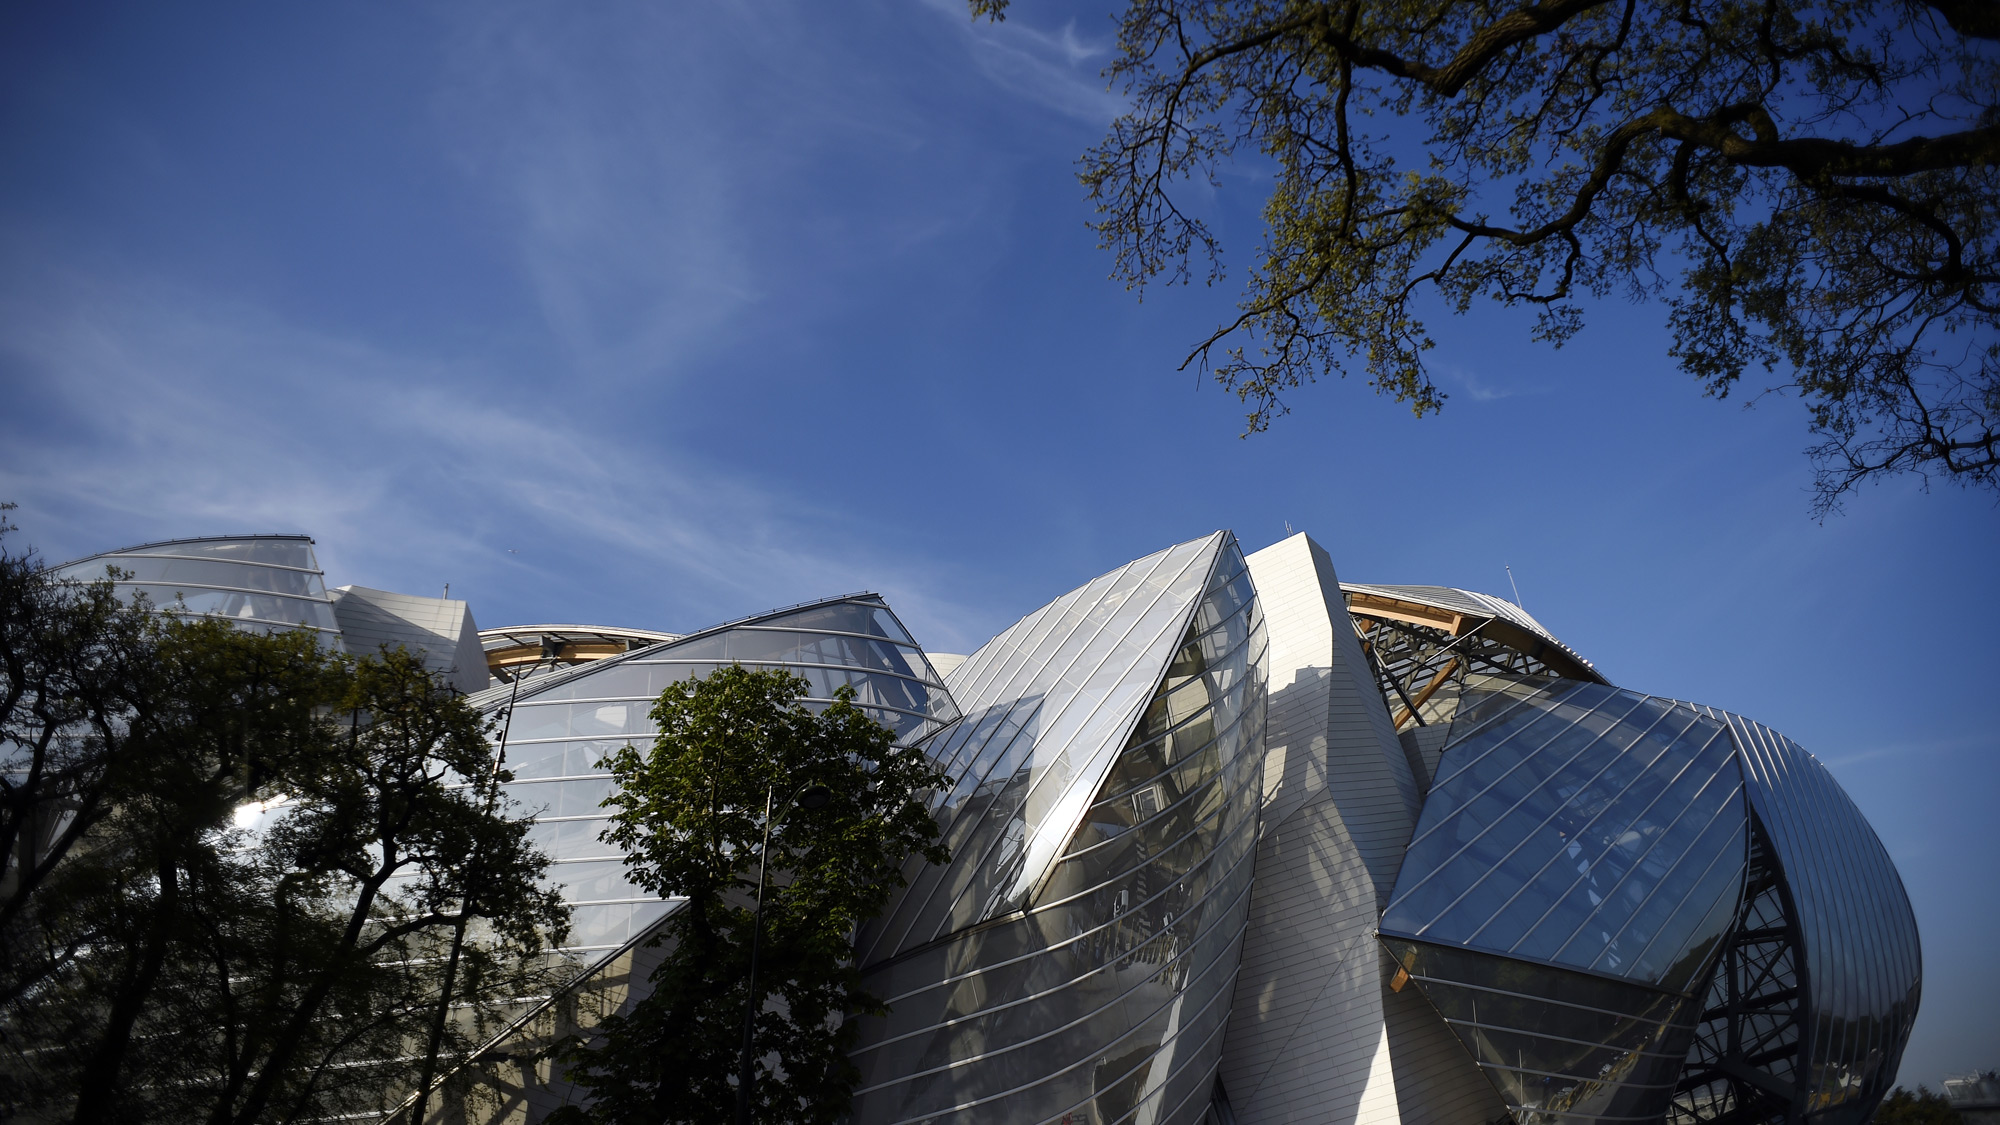 Paris : Fondation Louis Vuitton, oeuvre de l'architecte Frank Gehry,  caravelle de verre et d'acier au coeur du bois de Boulogne - XVIème - Paris  la douce, magazine parisien, culture, sorties, art